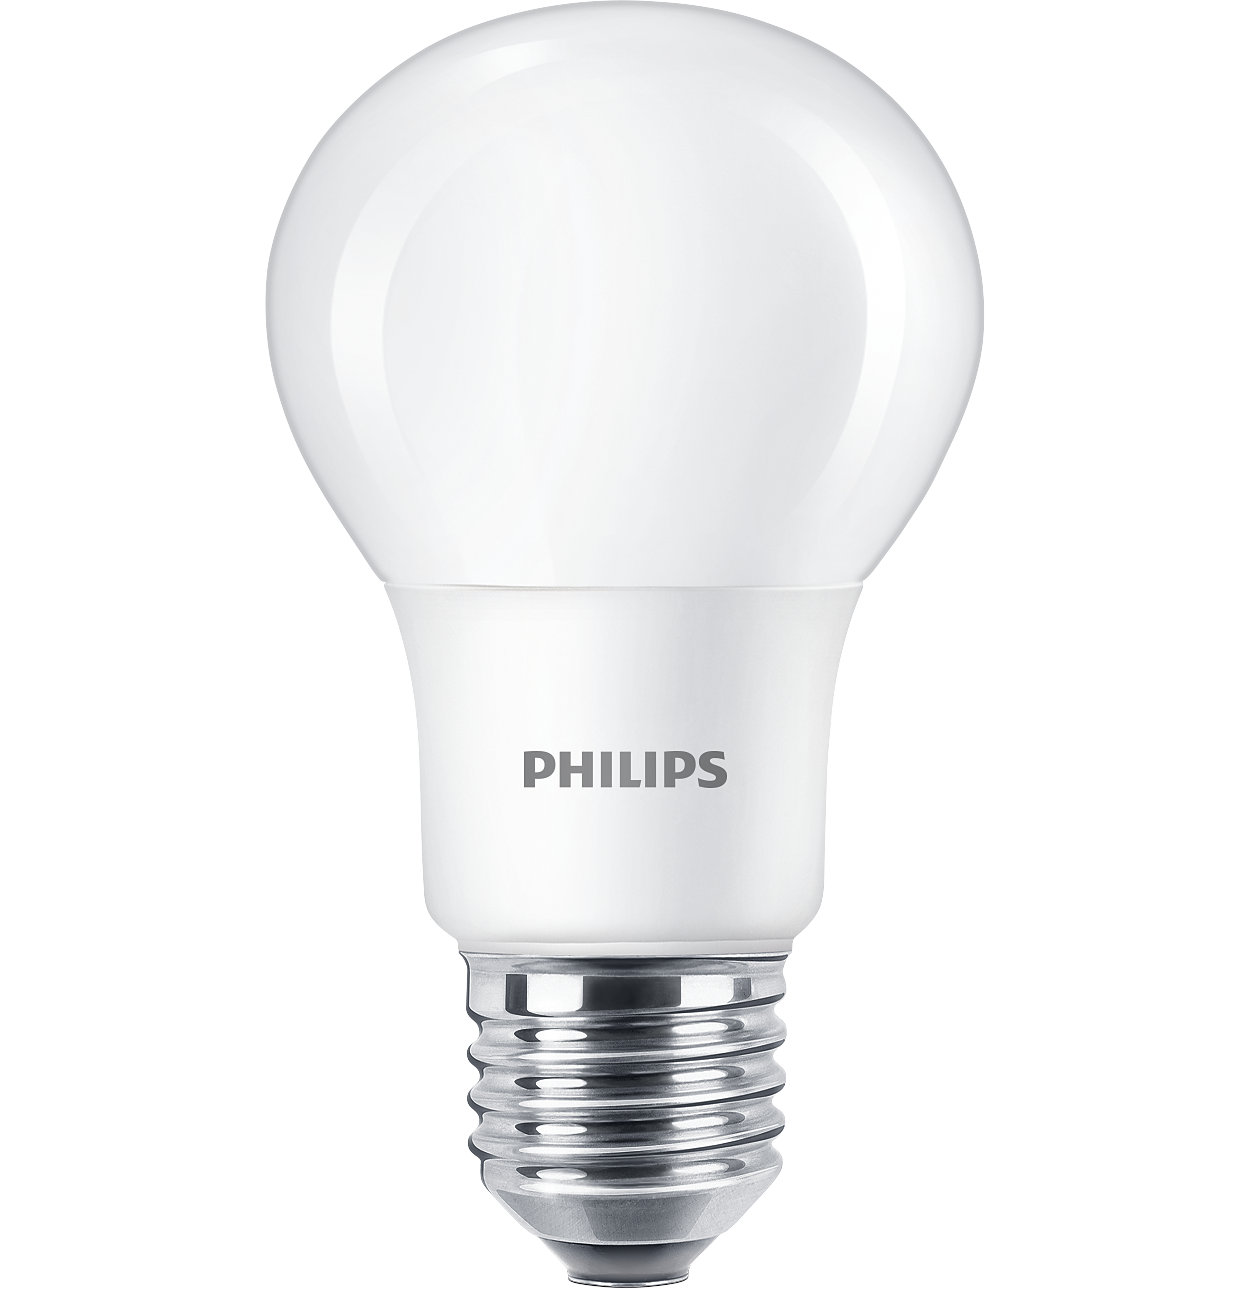 CorePro LED lambalar genel aydınlatma uygulamaları için idealdir. Sağladığı sıcak, halojen benzeri ışık ile LEDspot da, spot aydınlatması için ideal ve trafolarla geniş ölçüde uyumludur.